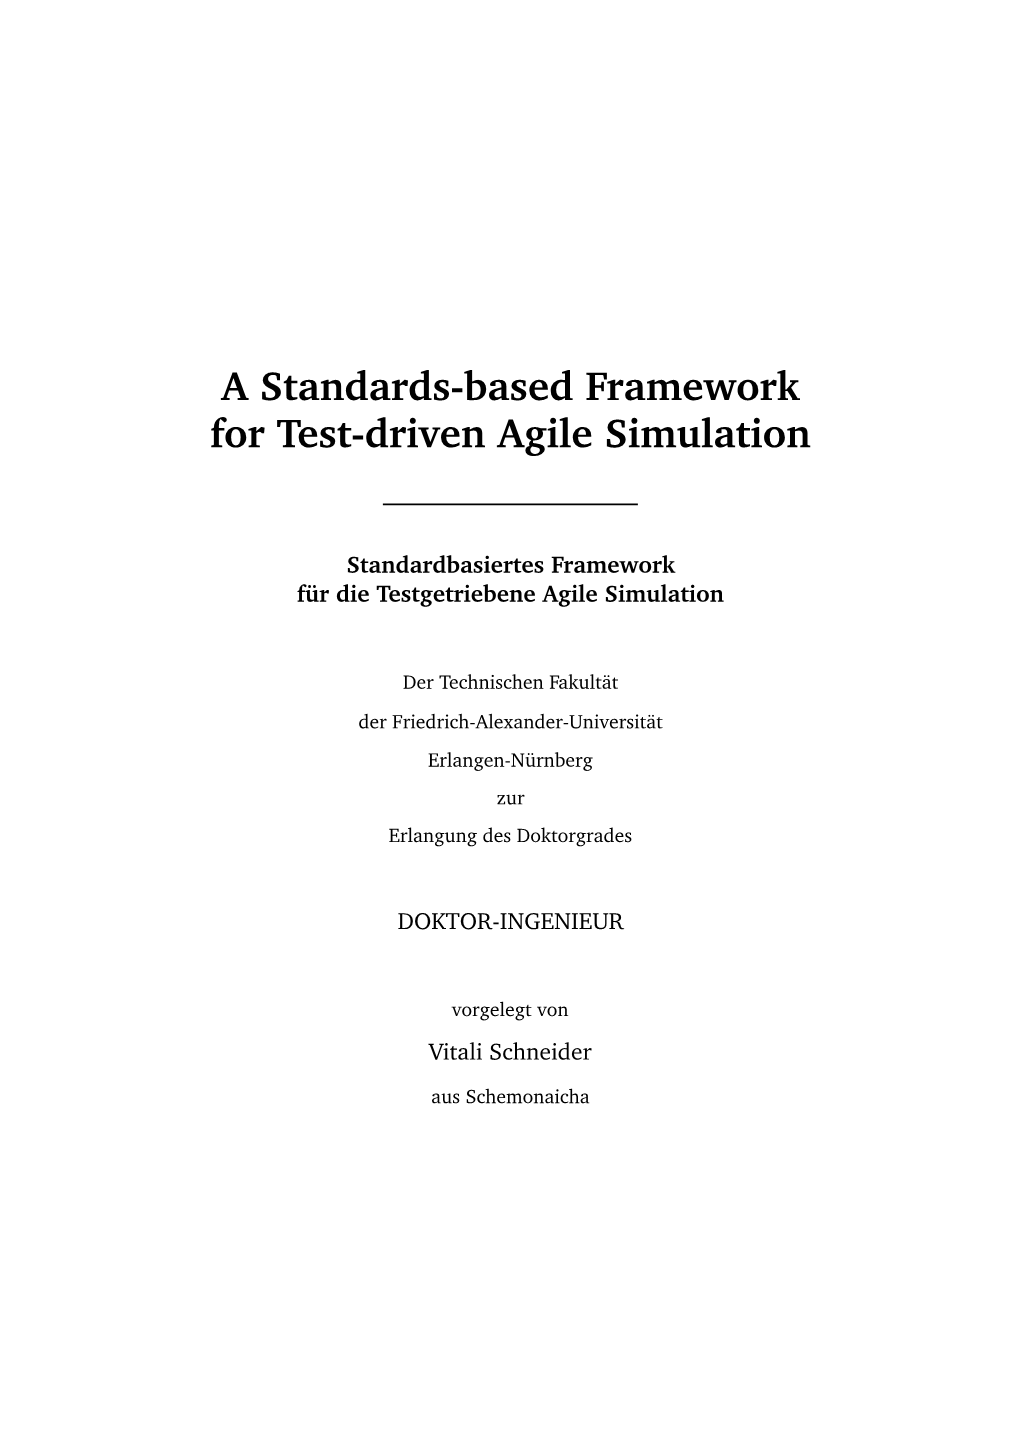 A Standards-Based Framework for Test-Driven Agile Simulation